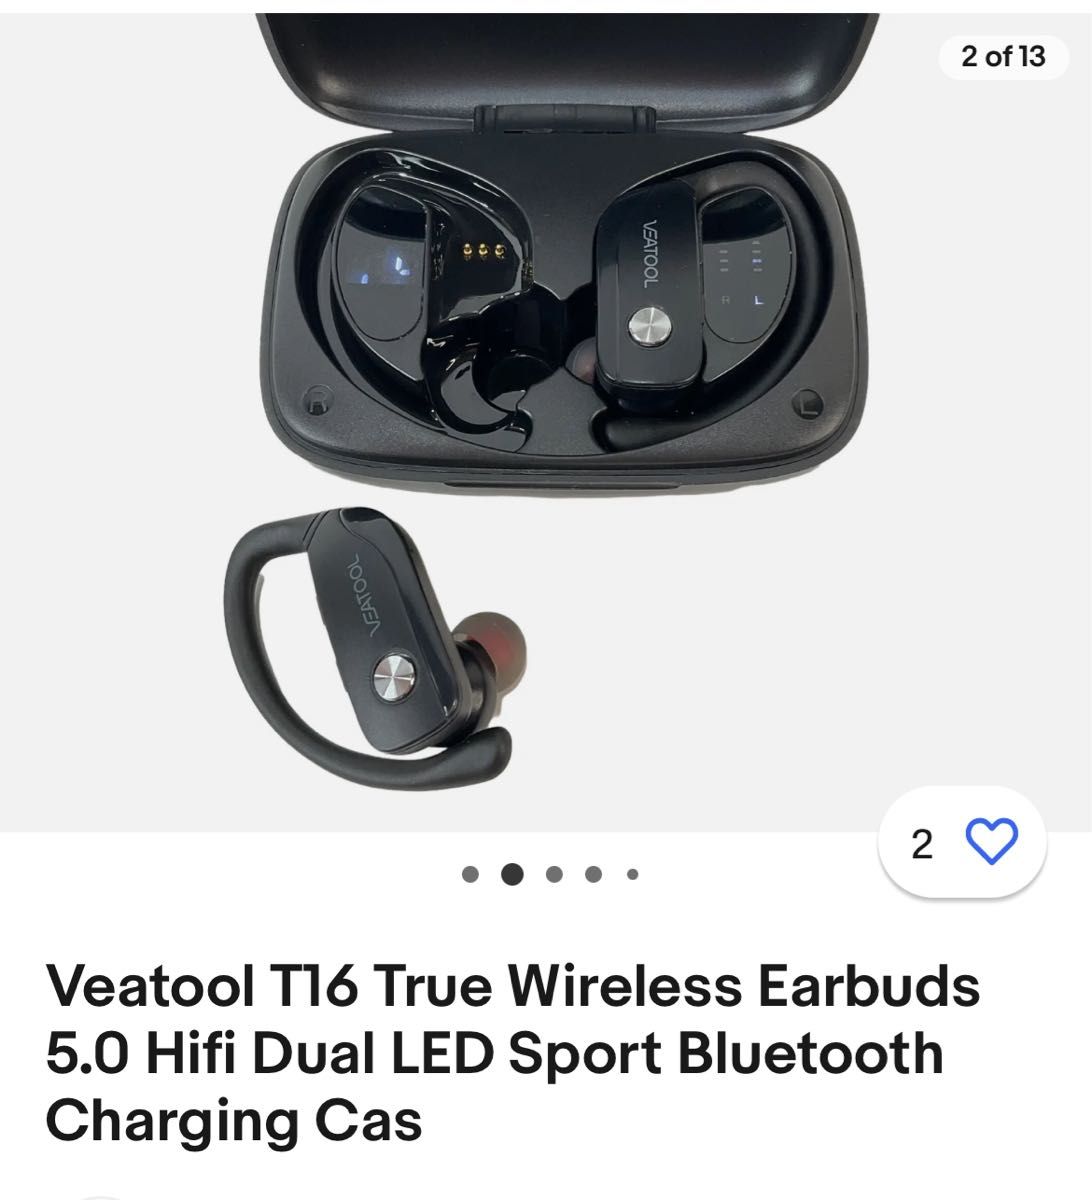 Veatool T16 True Wireless Earbuds